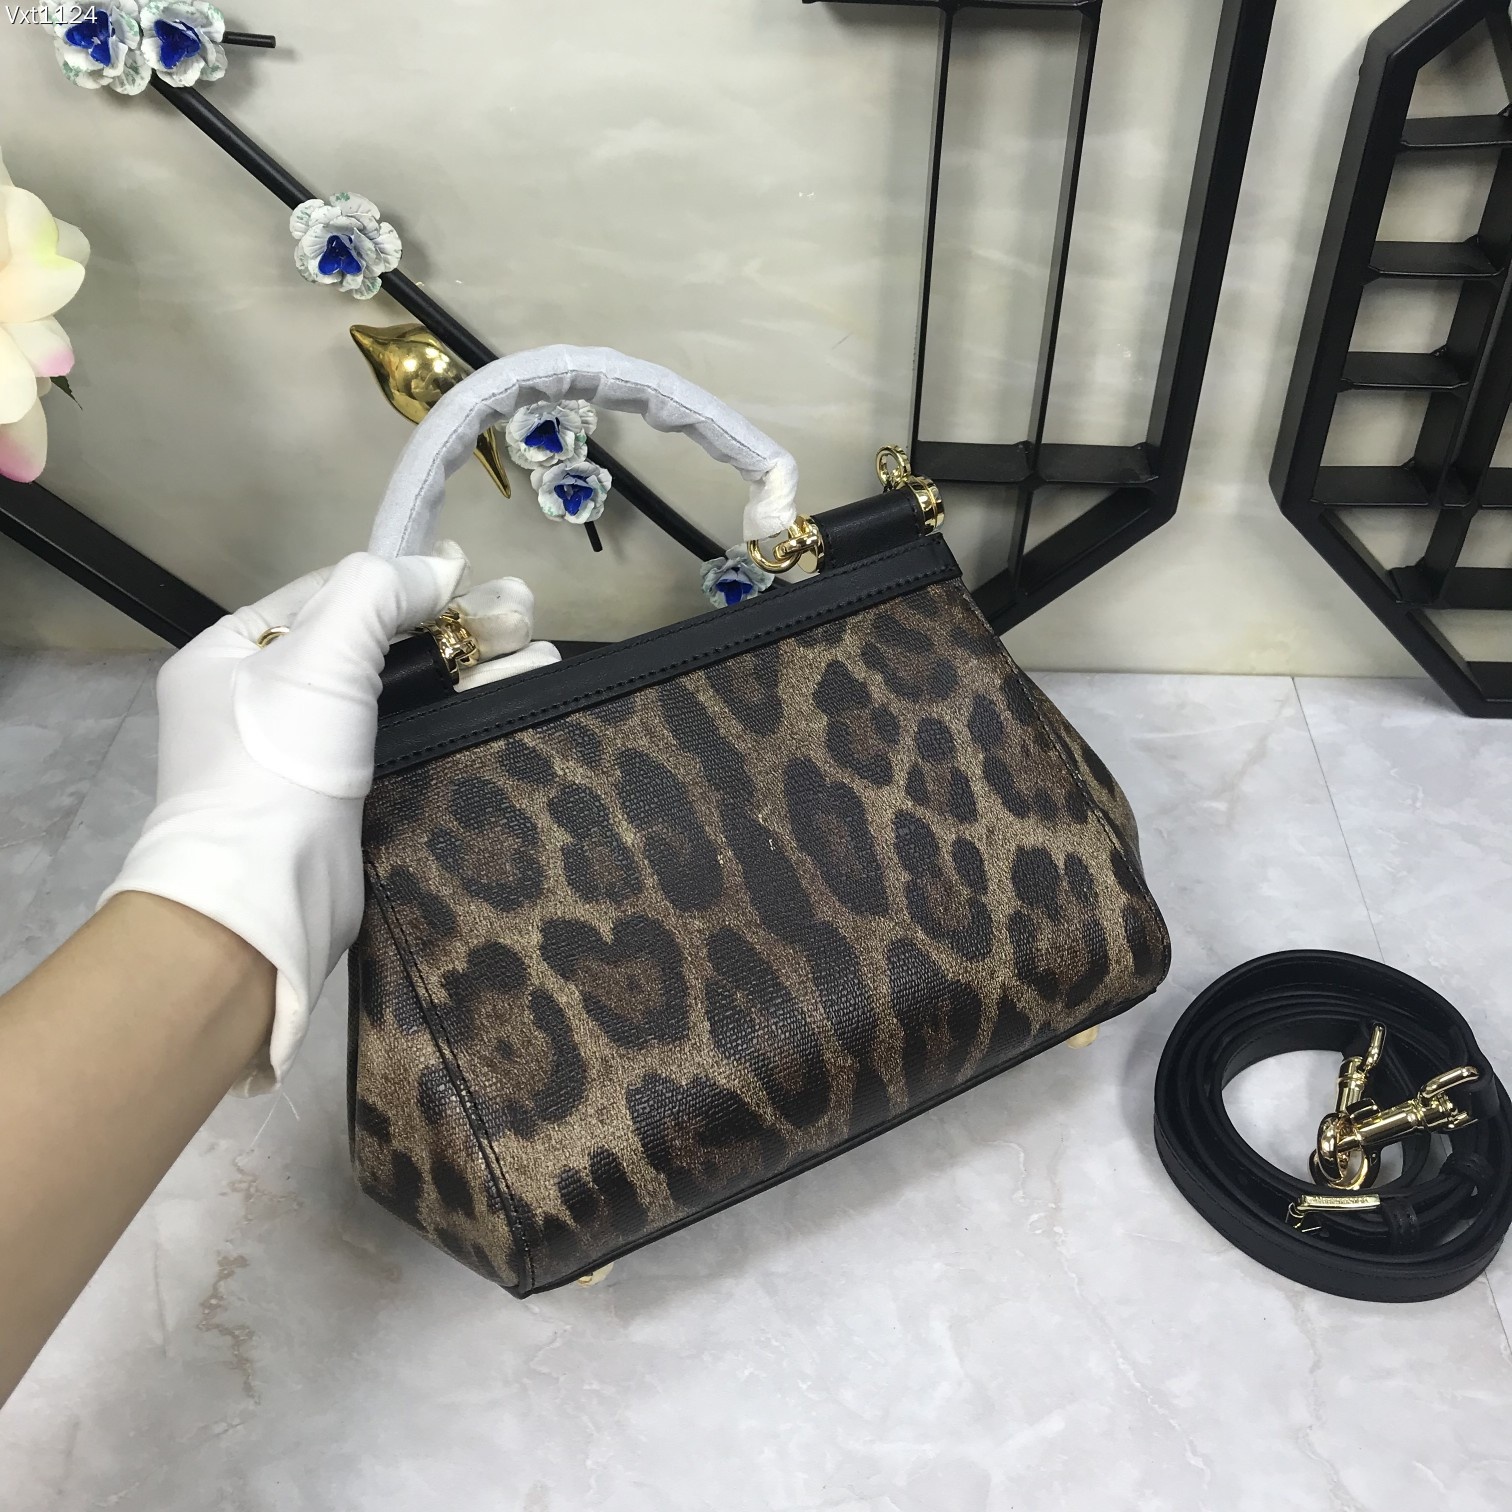 原单Dolce&Gabbana杜嘉班纳经典豹纹时尚界另一款铂金包细腻手工制造众多明星的最爱可斜挎配镜子海